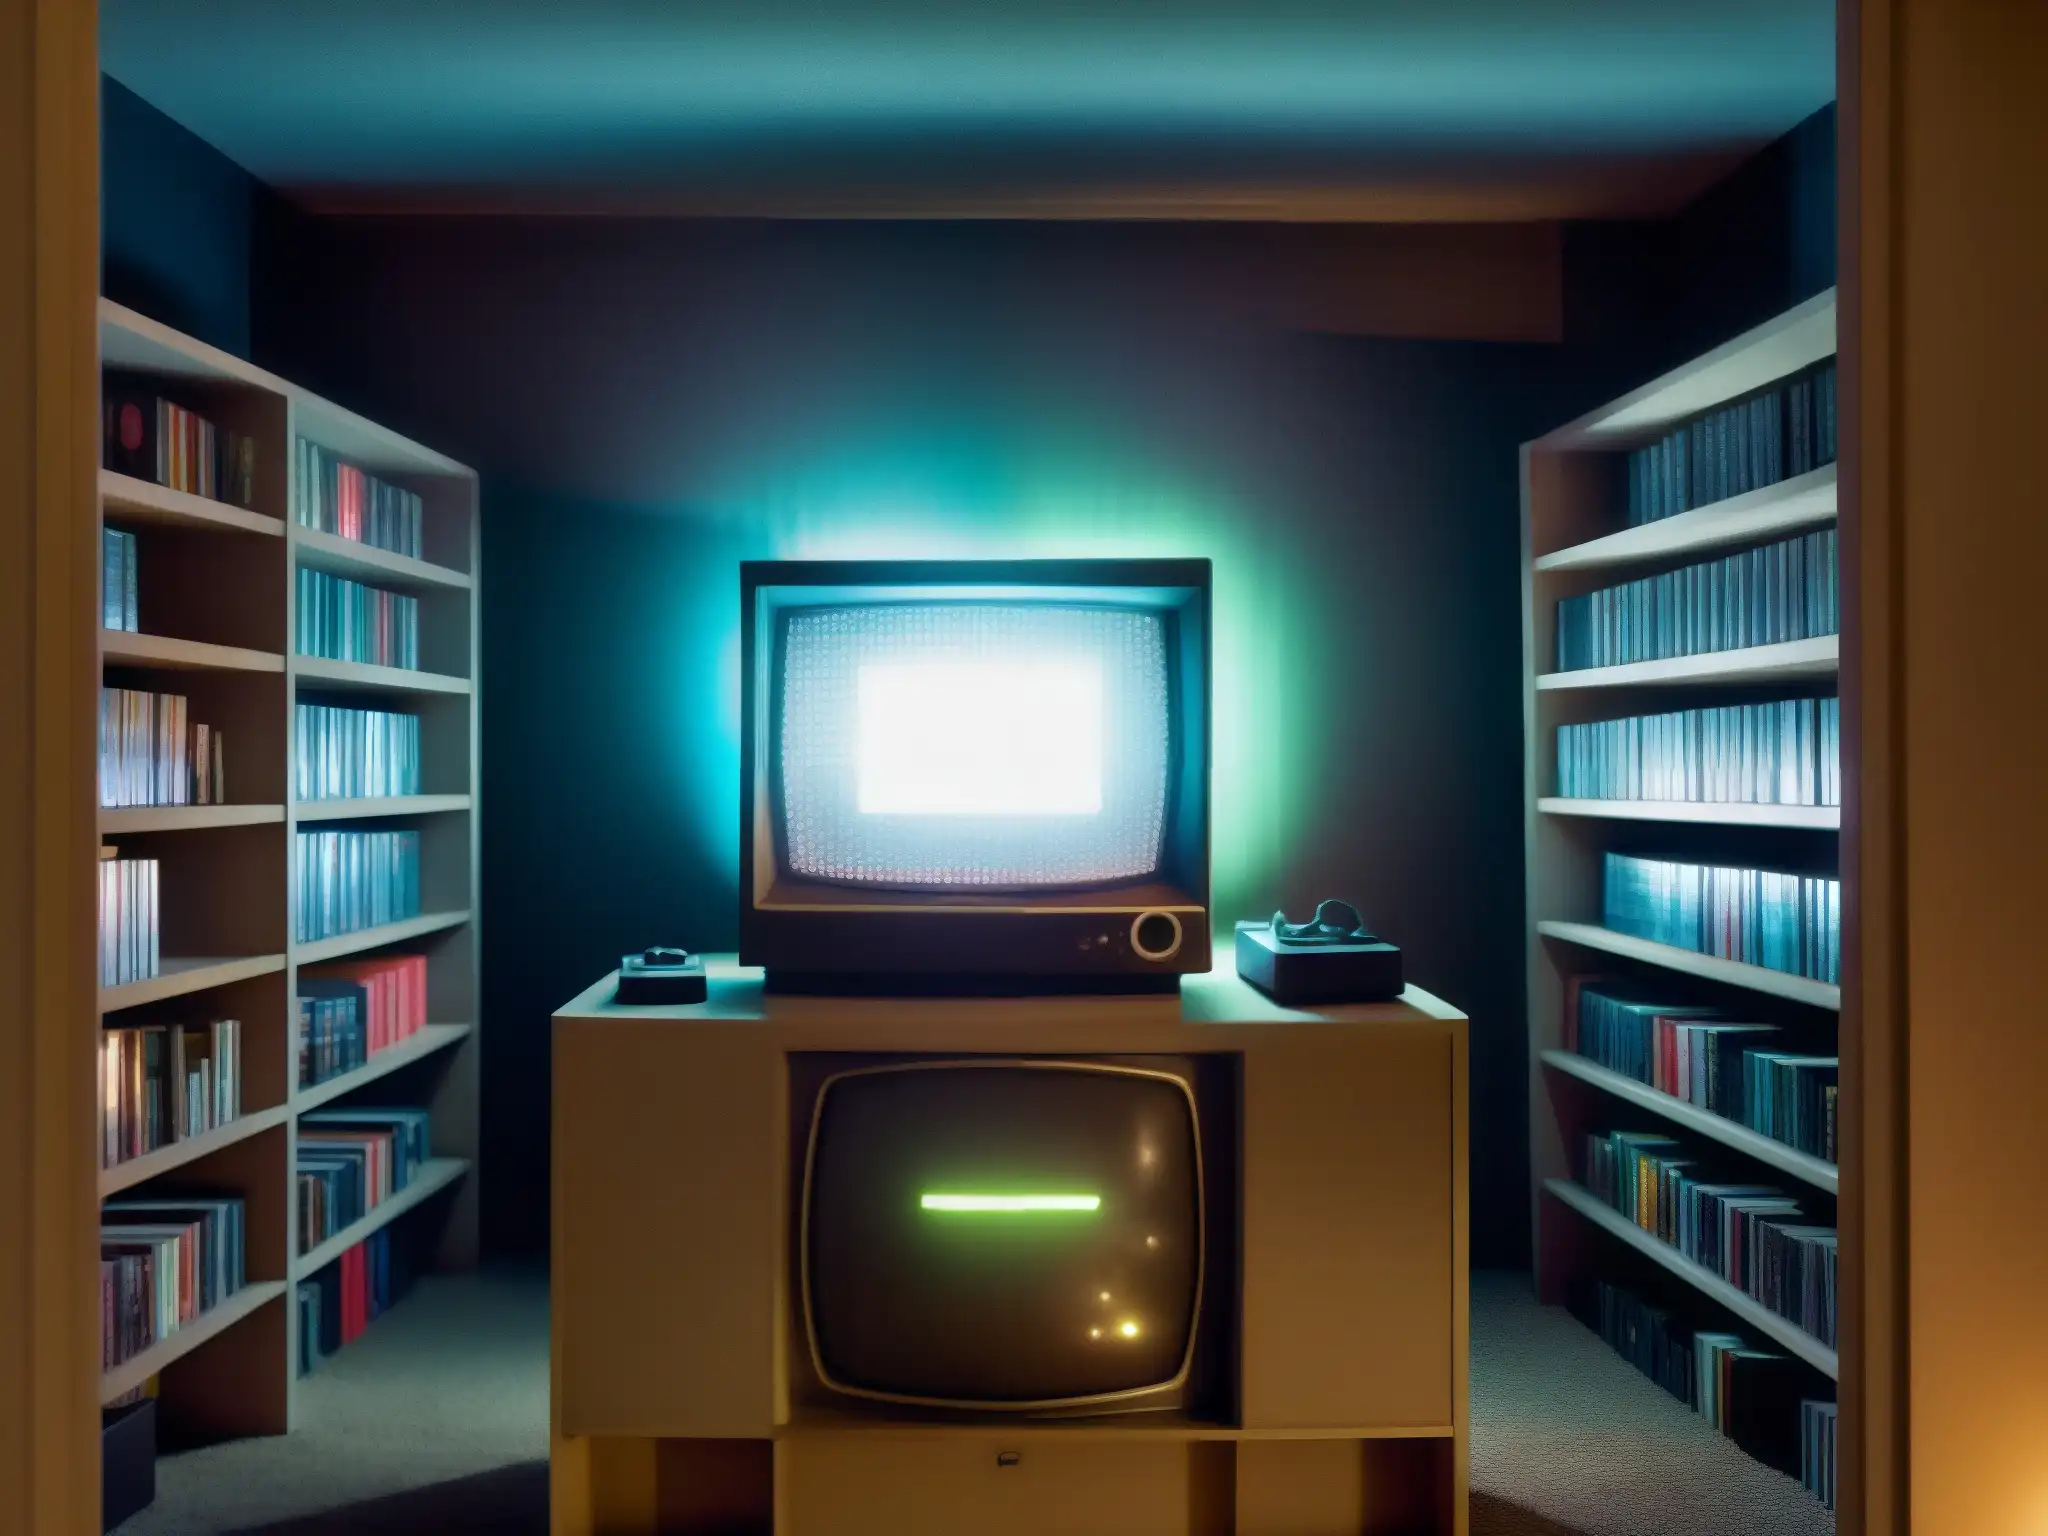 La imagen muestra una habitación tenue con estantes llenos de antiguos cartuchos y consolas de videojuegos